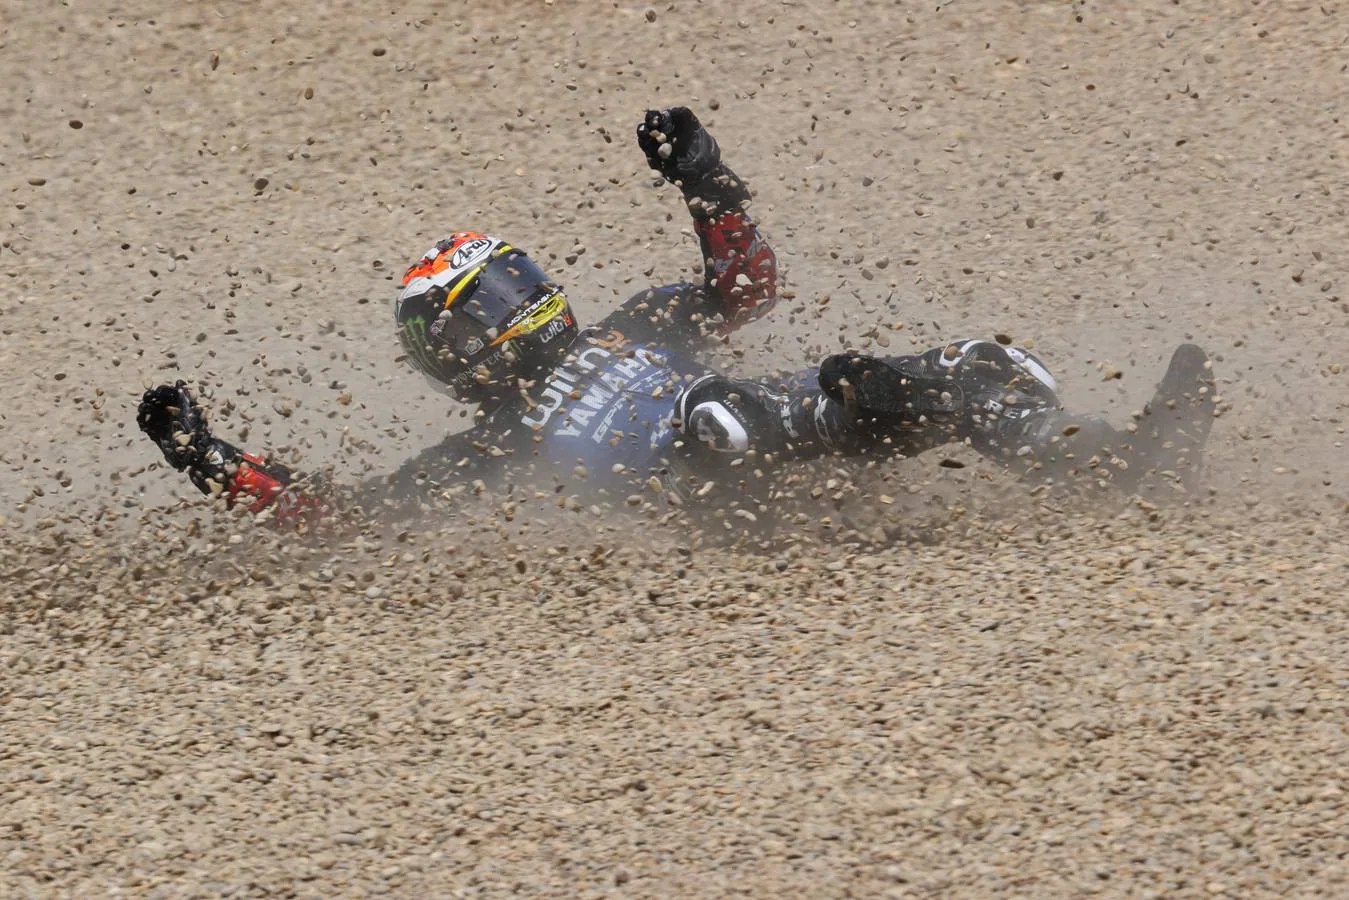 GALERÍA: Las fotos de la carrera MotoGP en Jerez